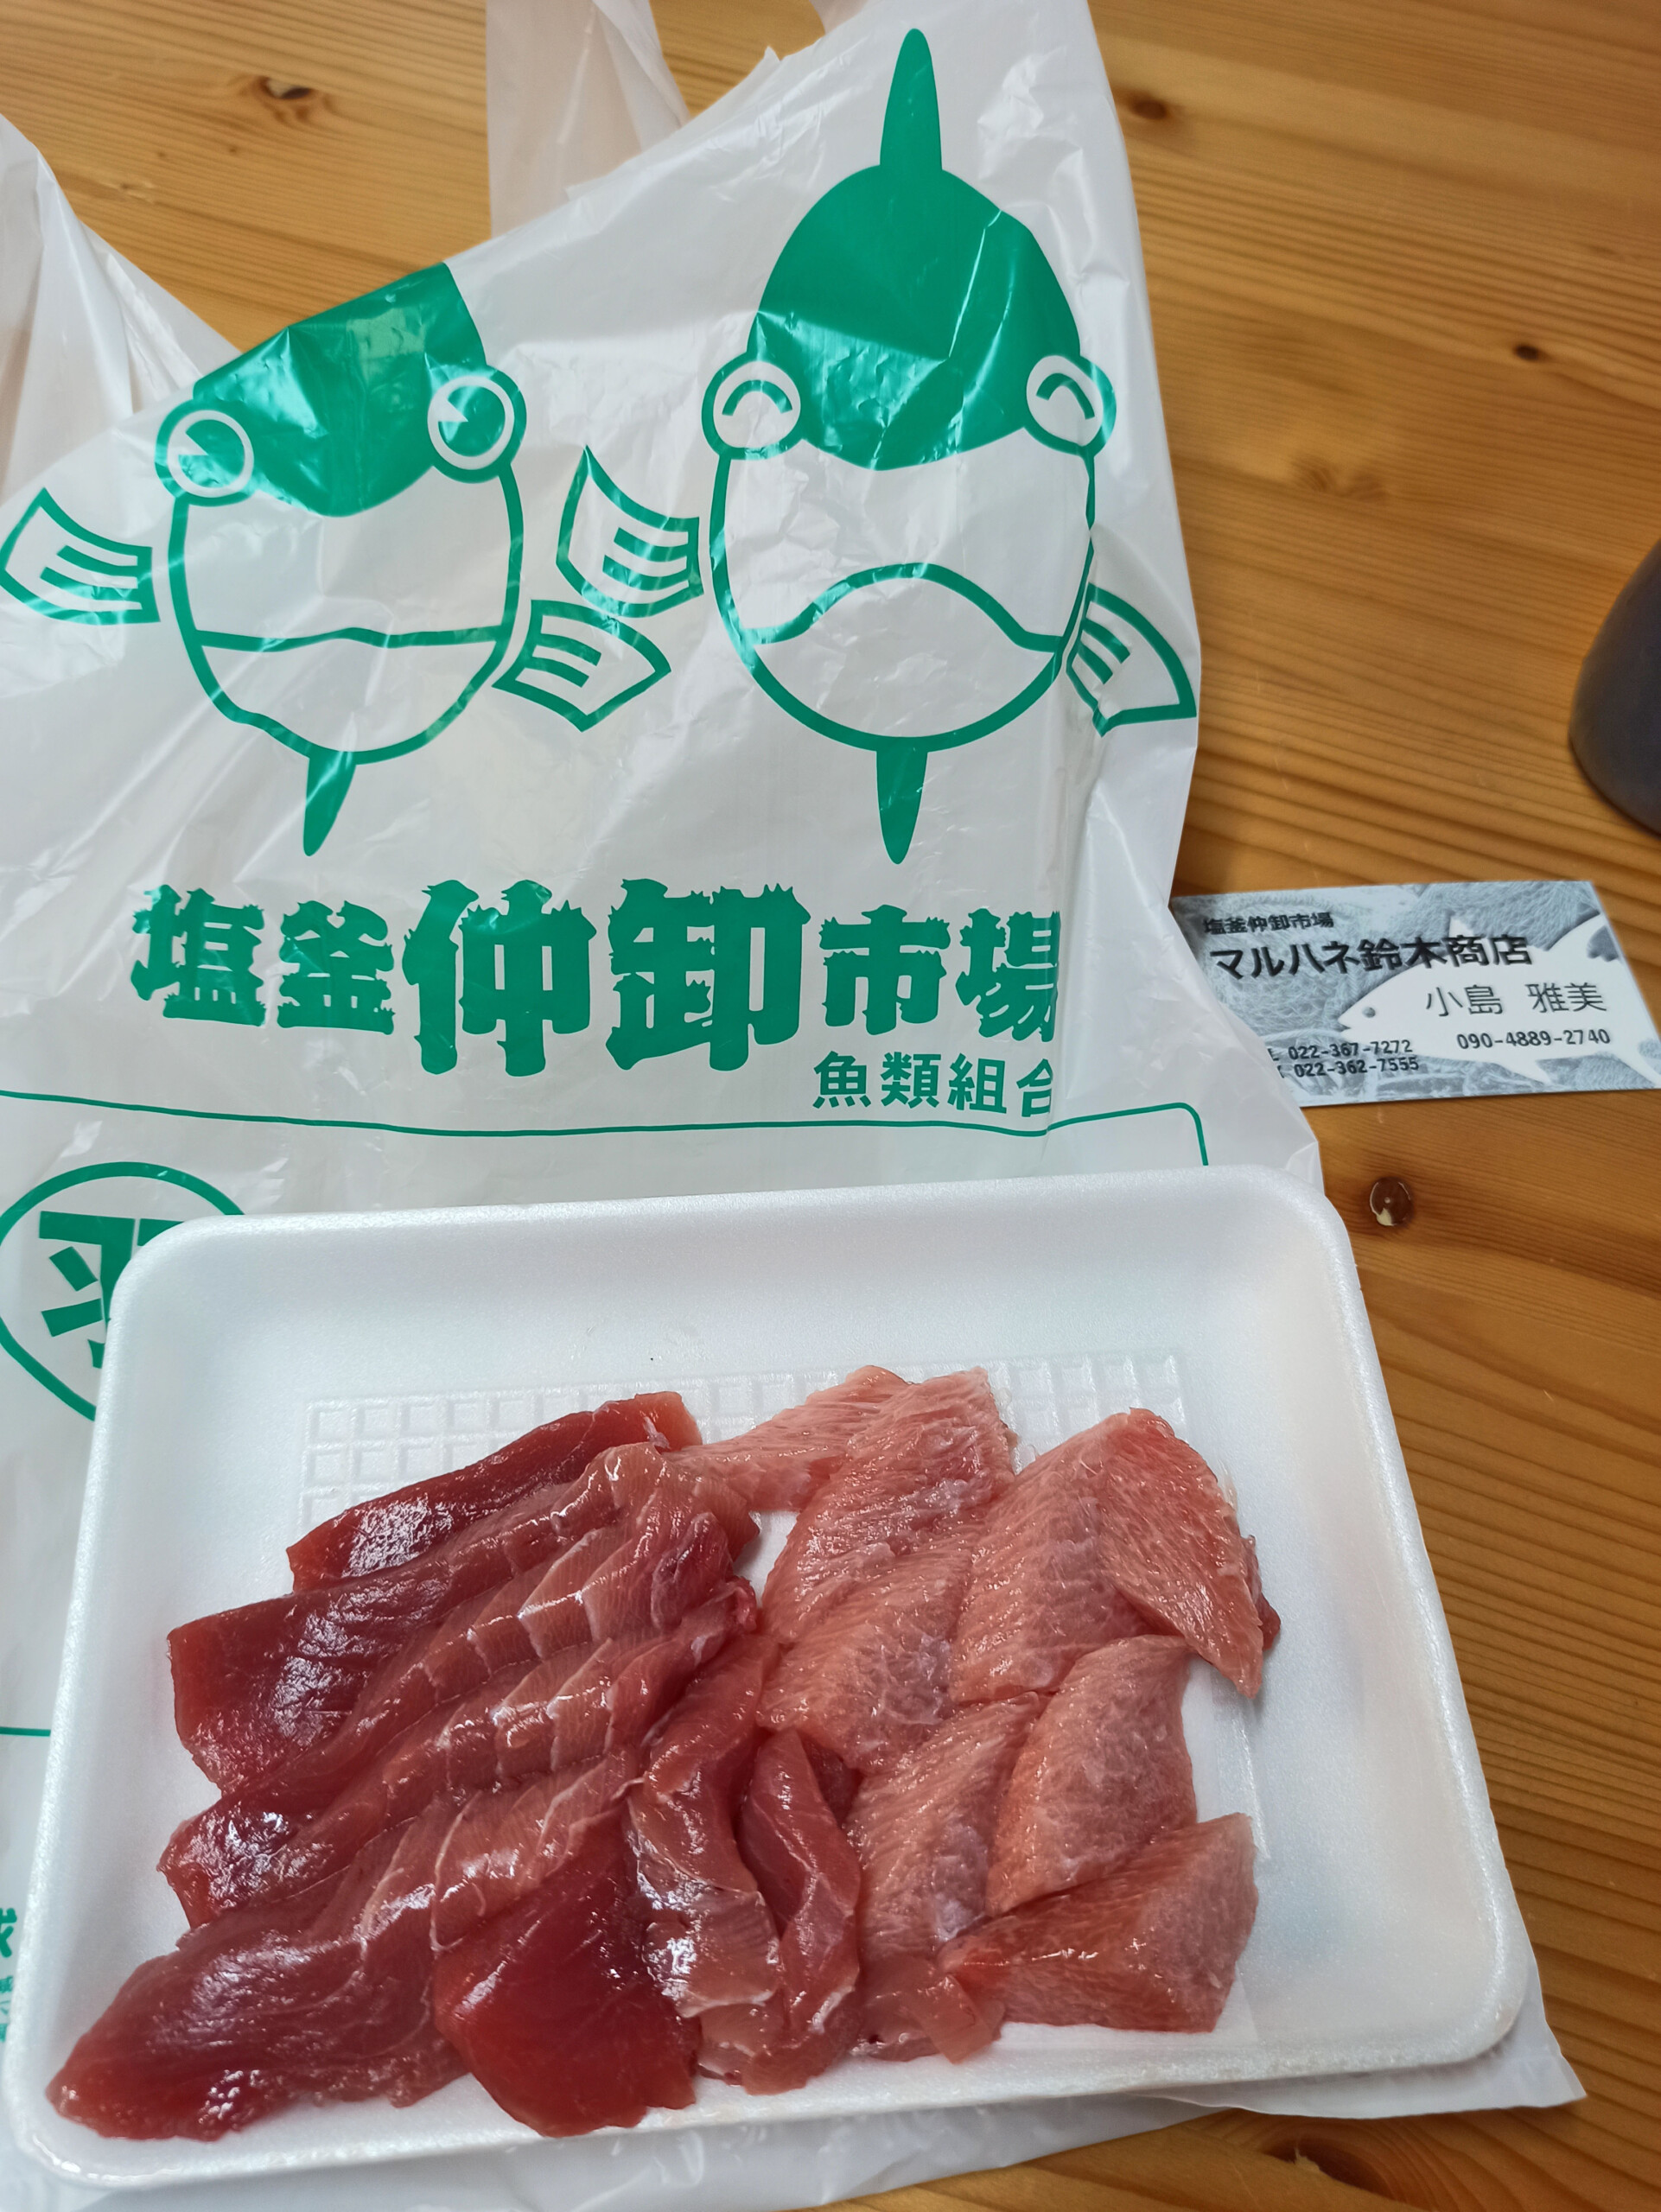 Tuna sashimi at Shiogama Wholesale Market, Japan